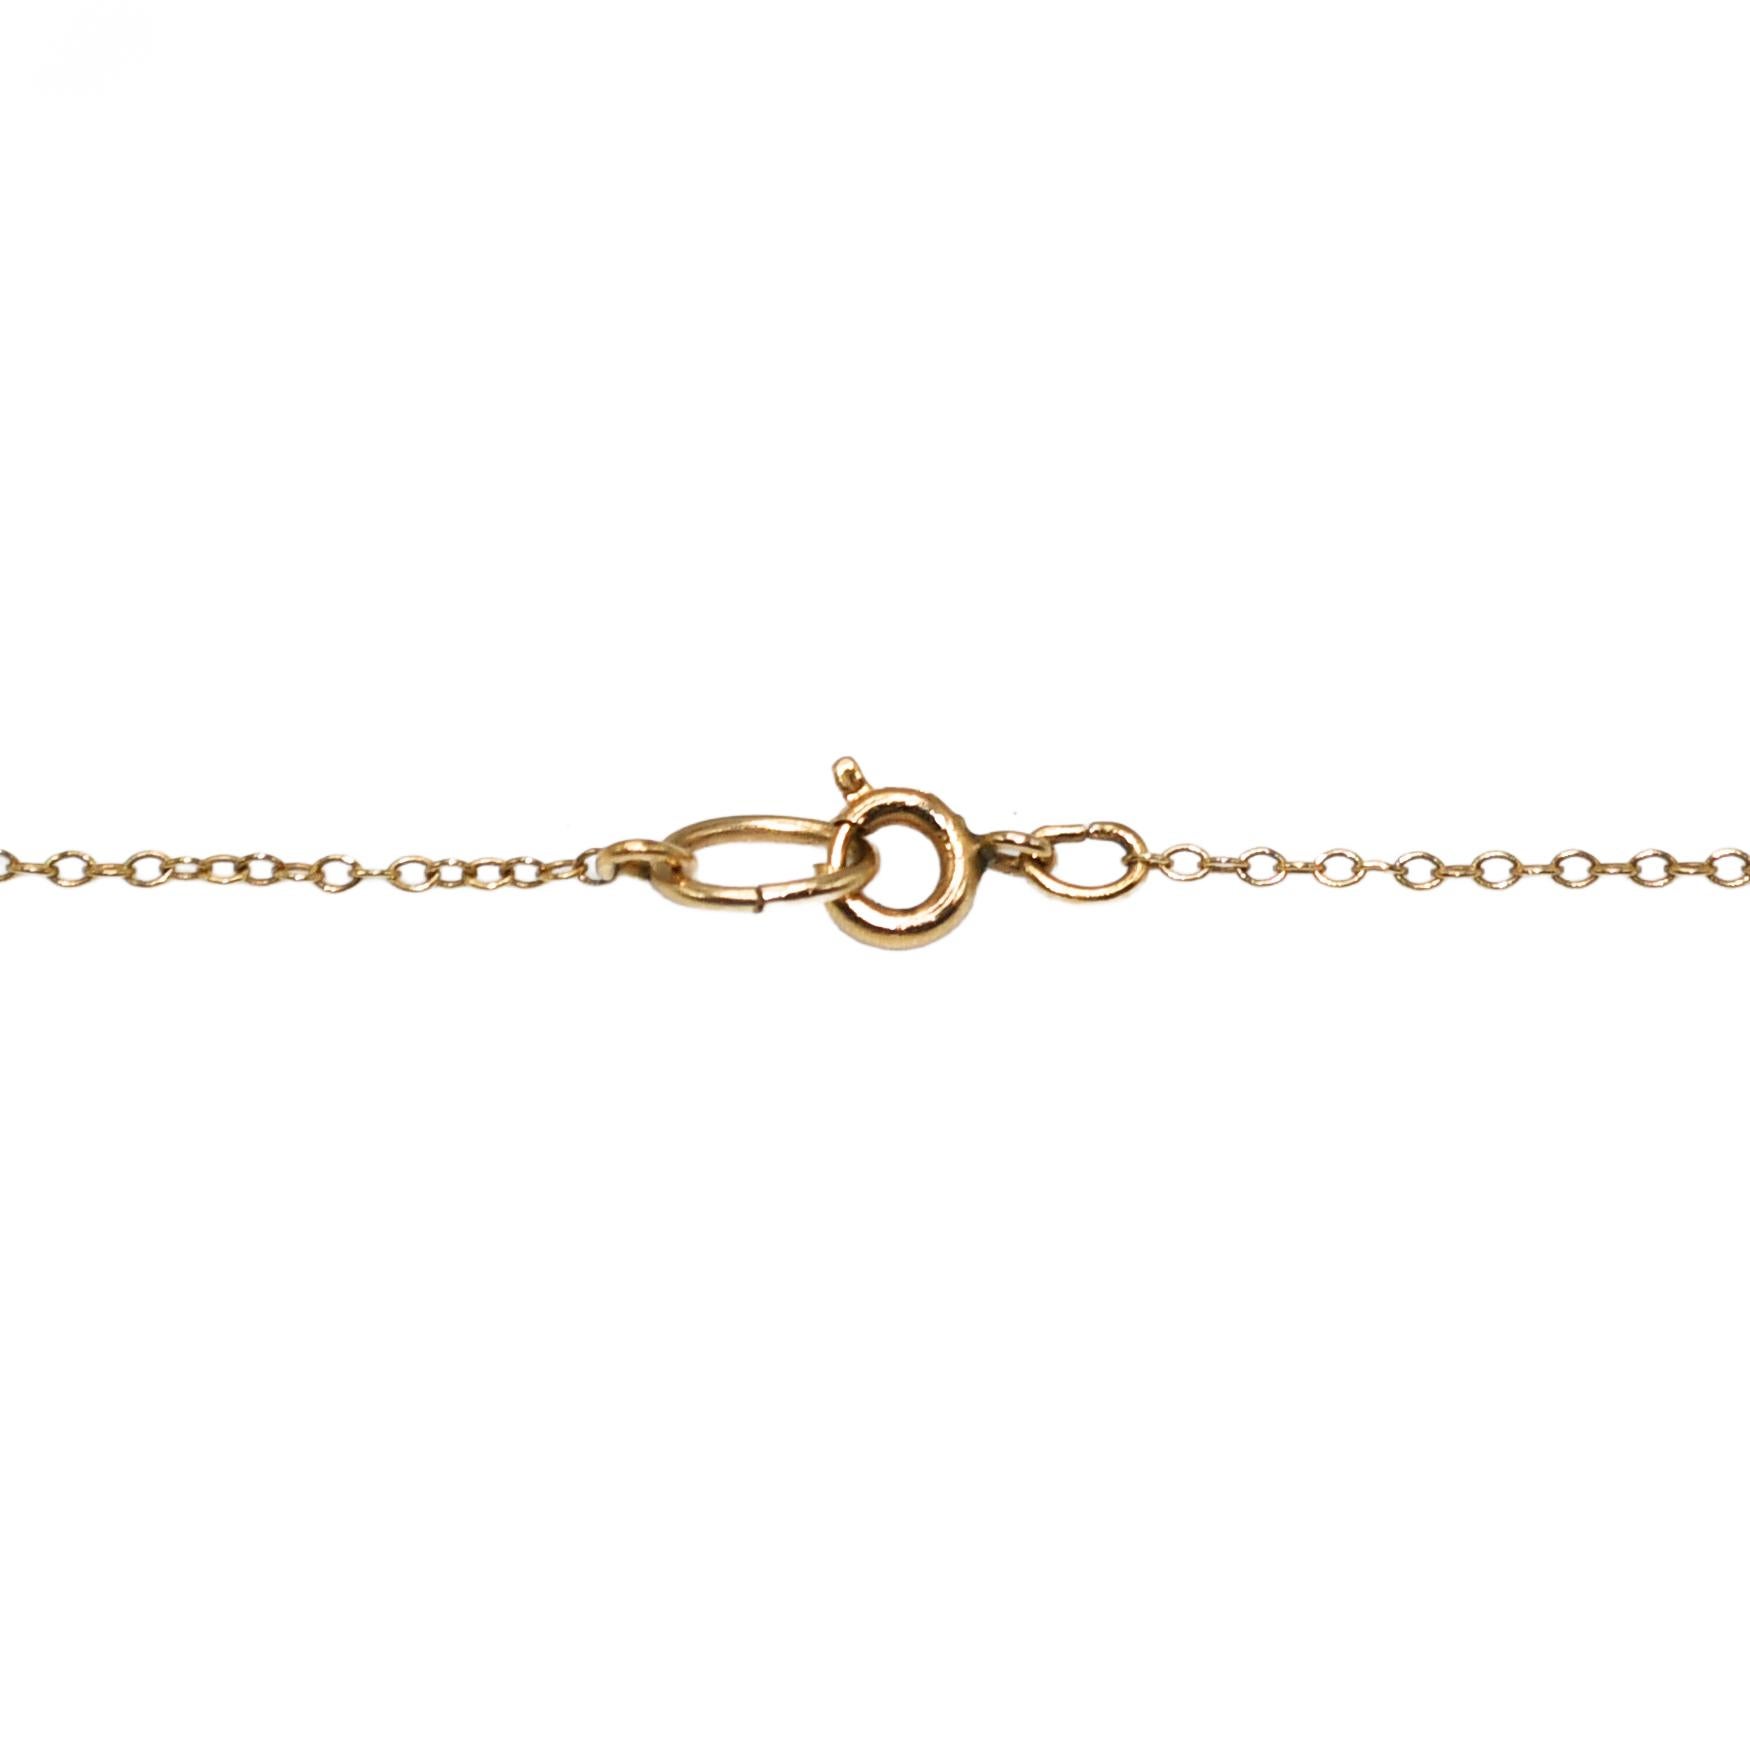 Uncut 14K Yellow Gold Australian Opal Necklace & Earrings Set For Sale